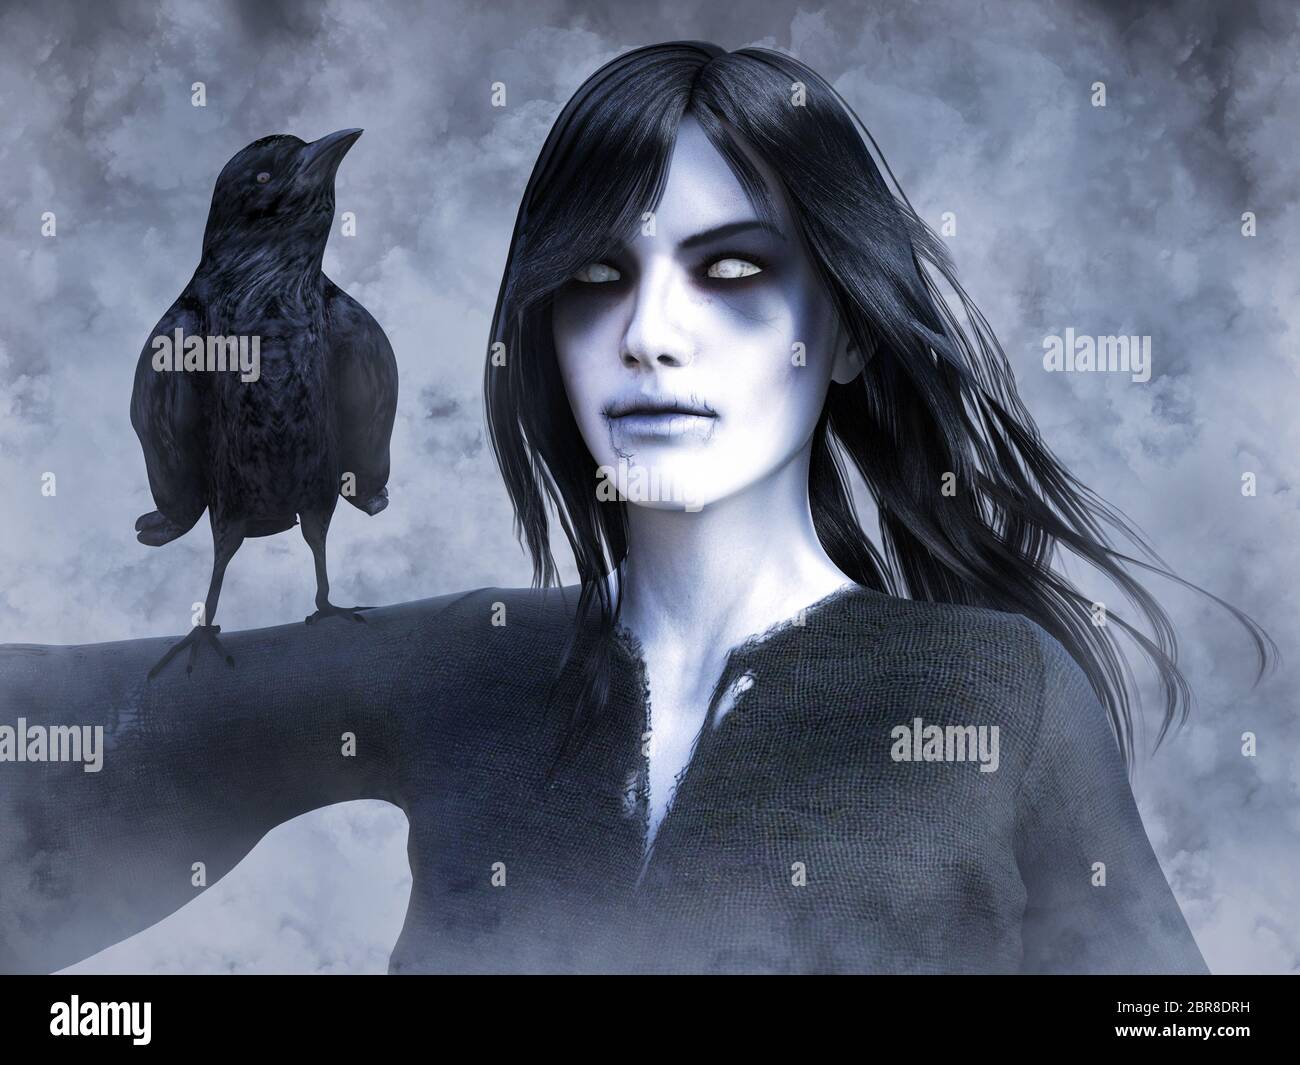 Representación 3D de una mujer fantasma muerto wraith con un cuervo negro en su brazo. Fondo de humo o niebla. Foto de stock